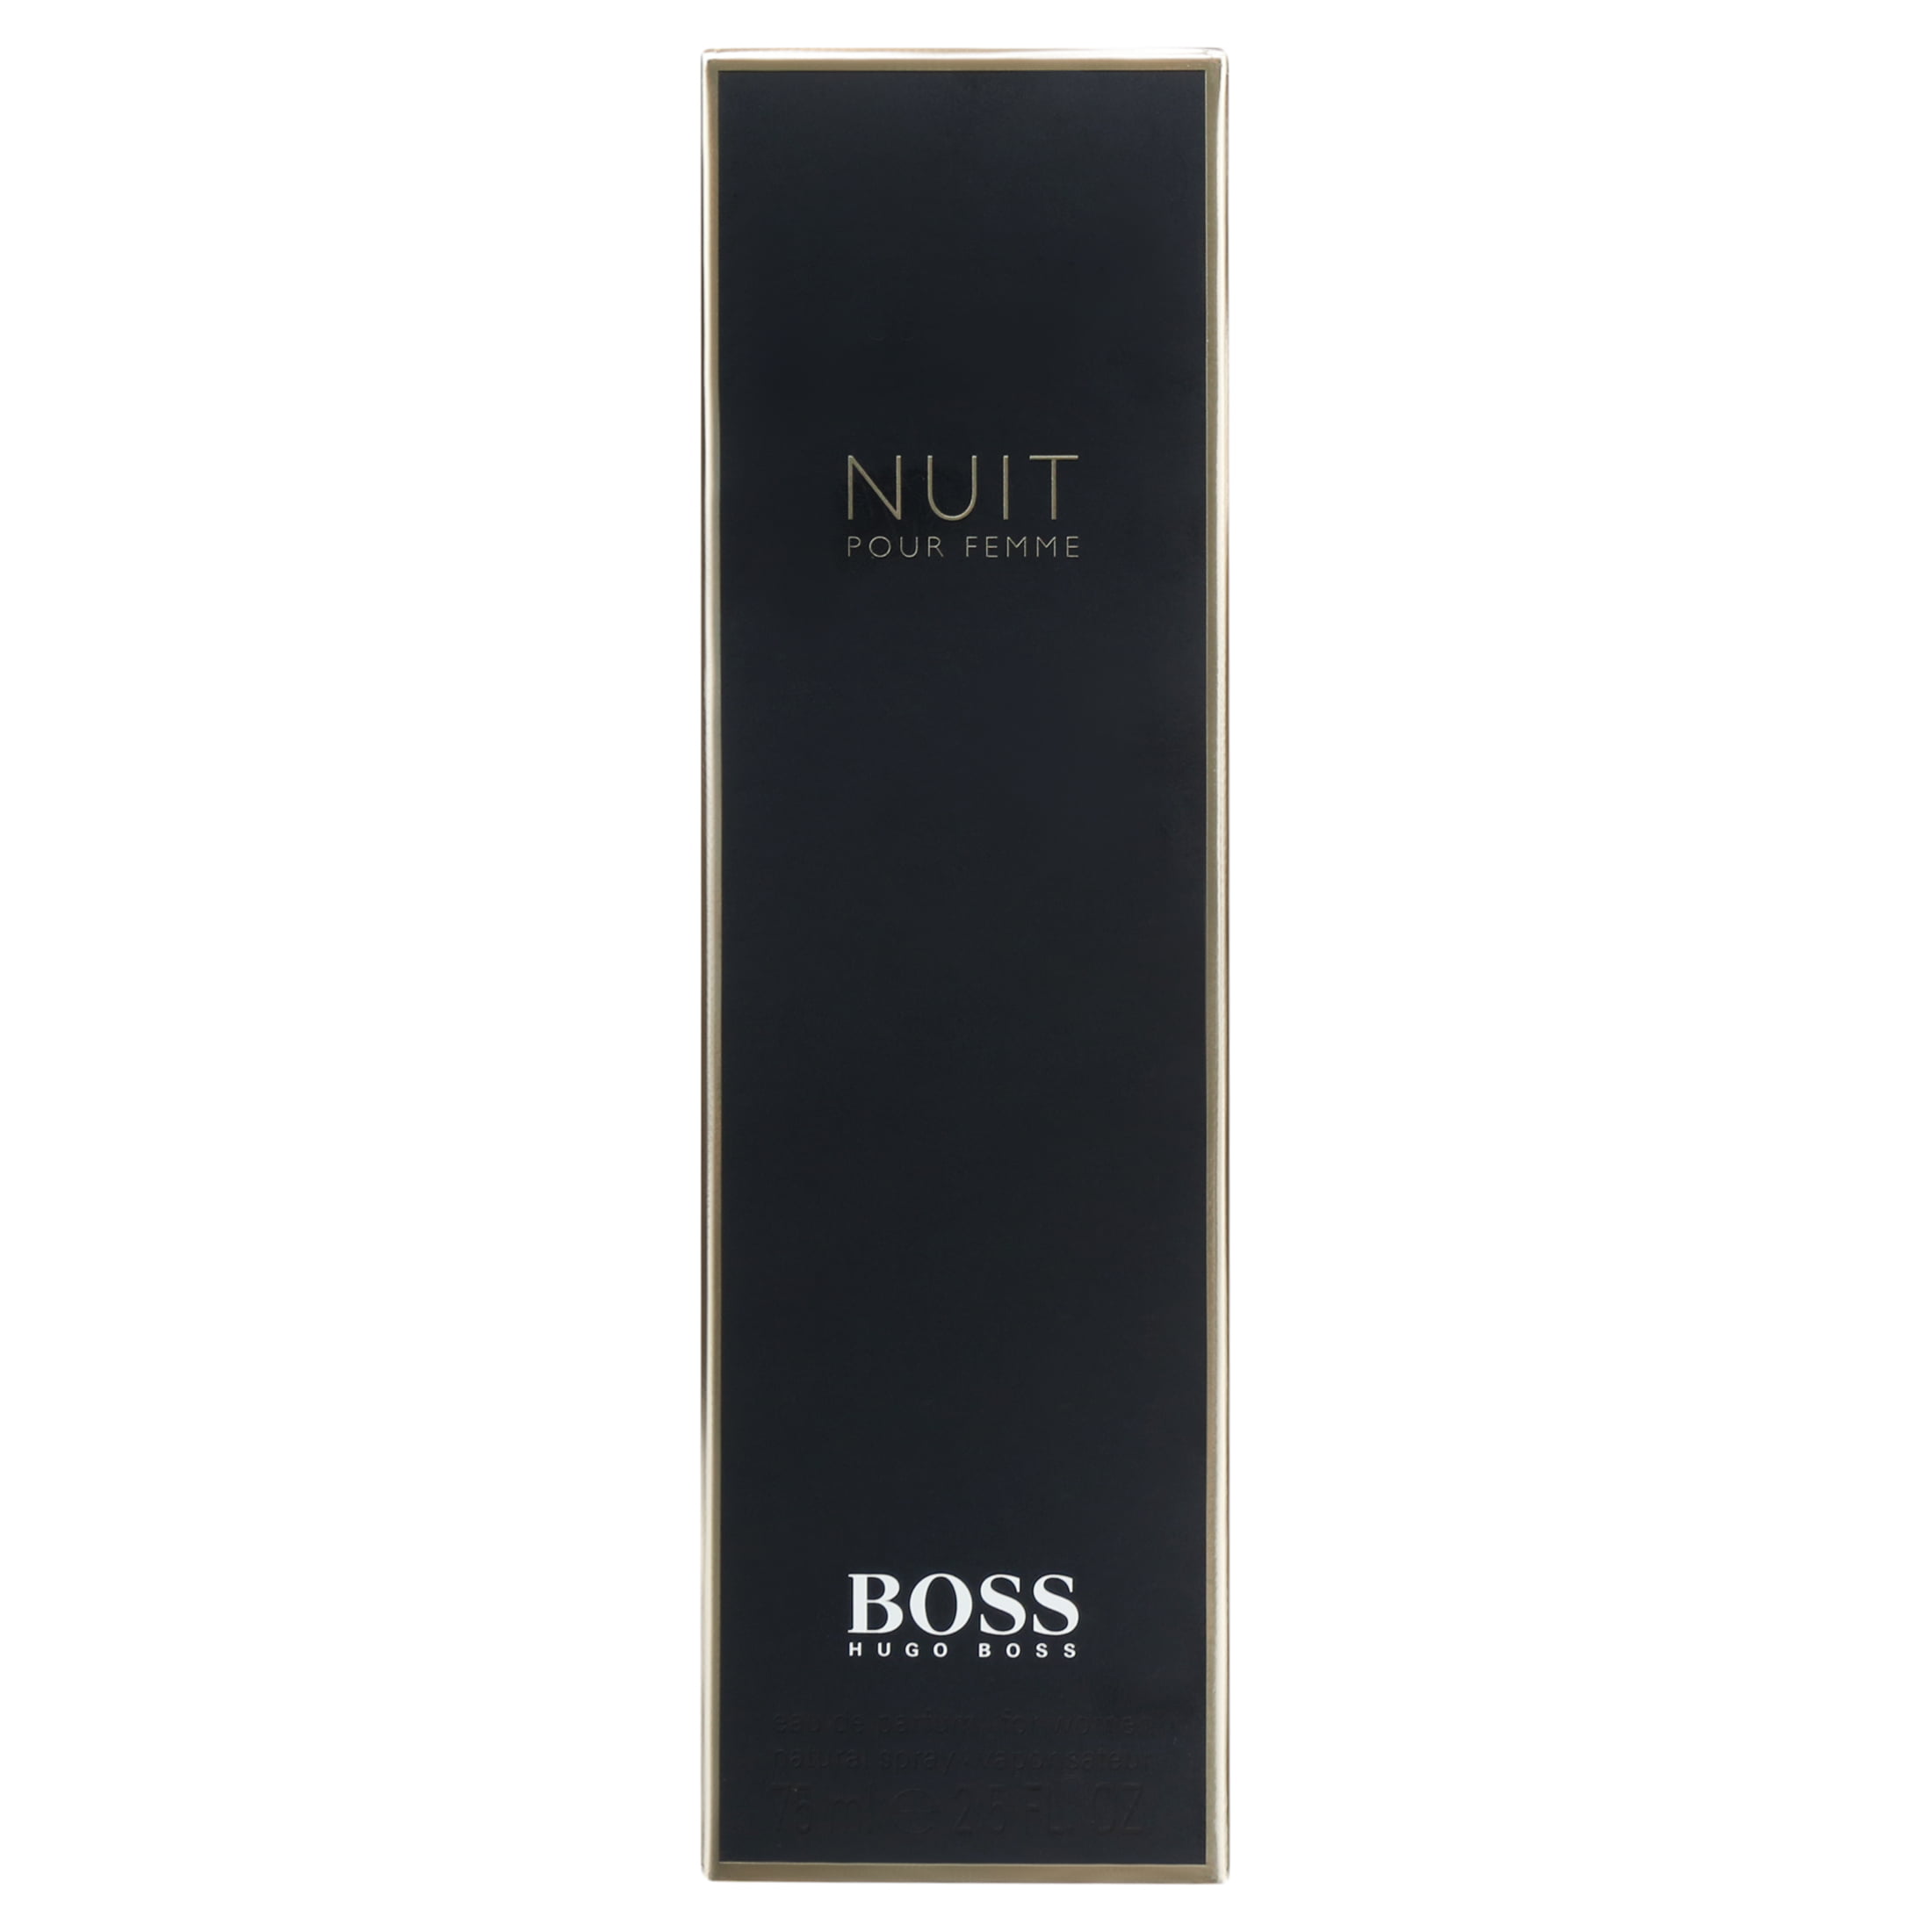 Valkuilen De lucht Savant Hugo Boss Boss Nuit Eau De Parfum Spray for Women 2.5 oz - Walmart.com